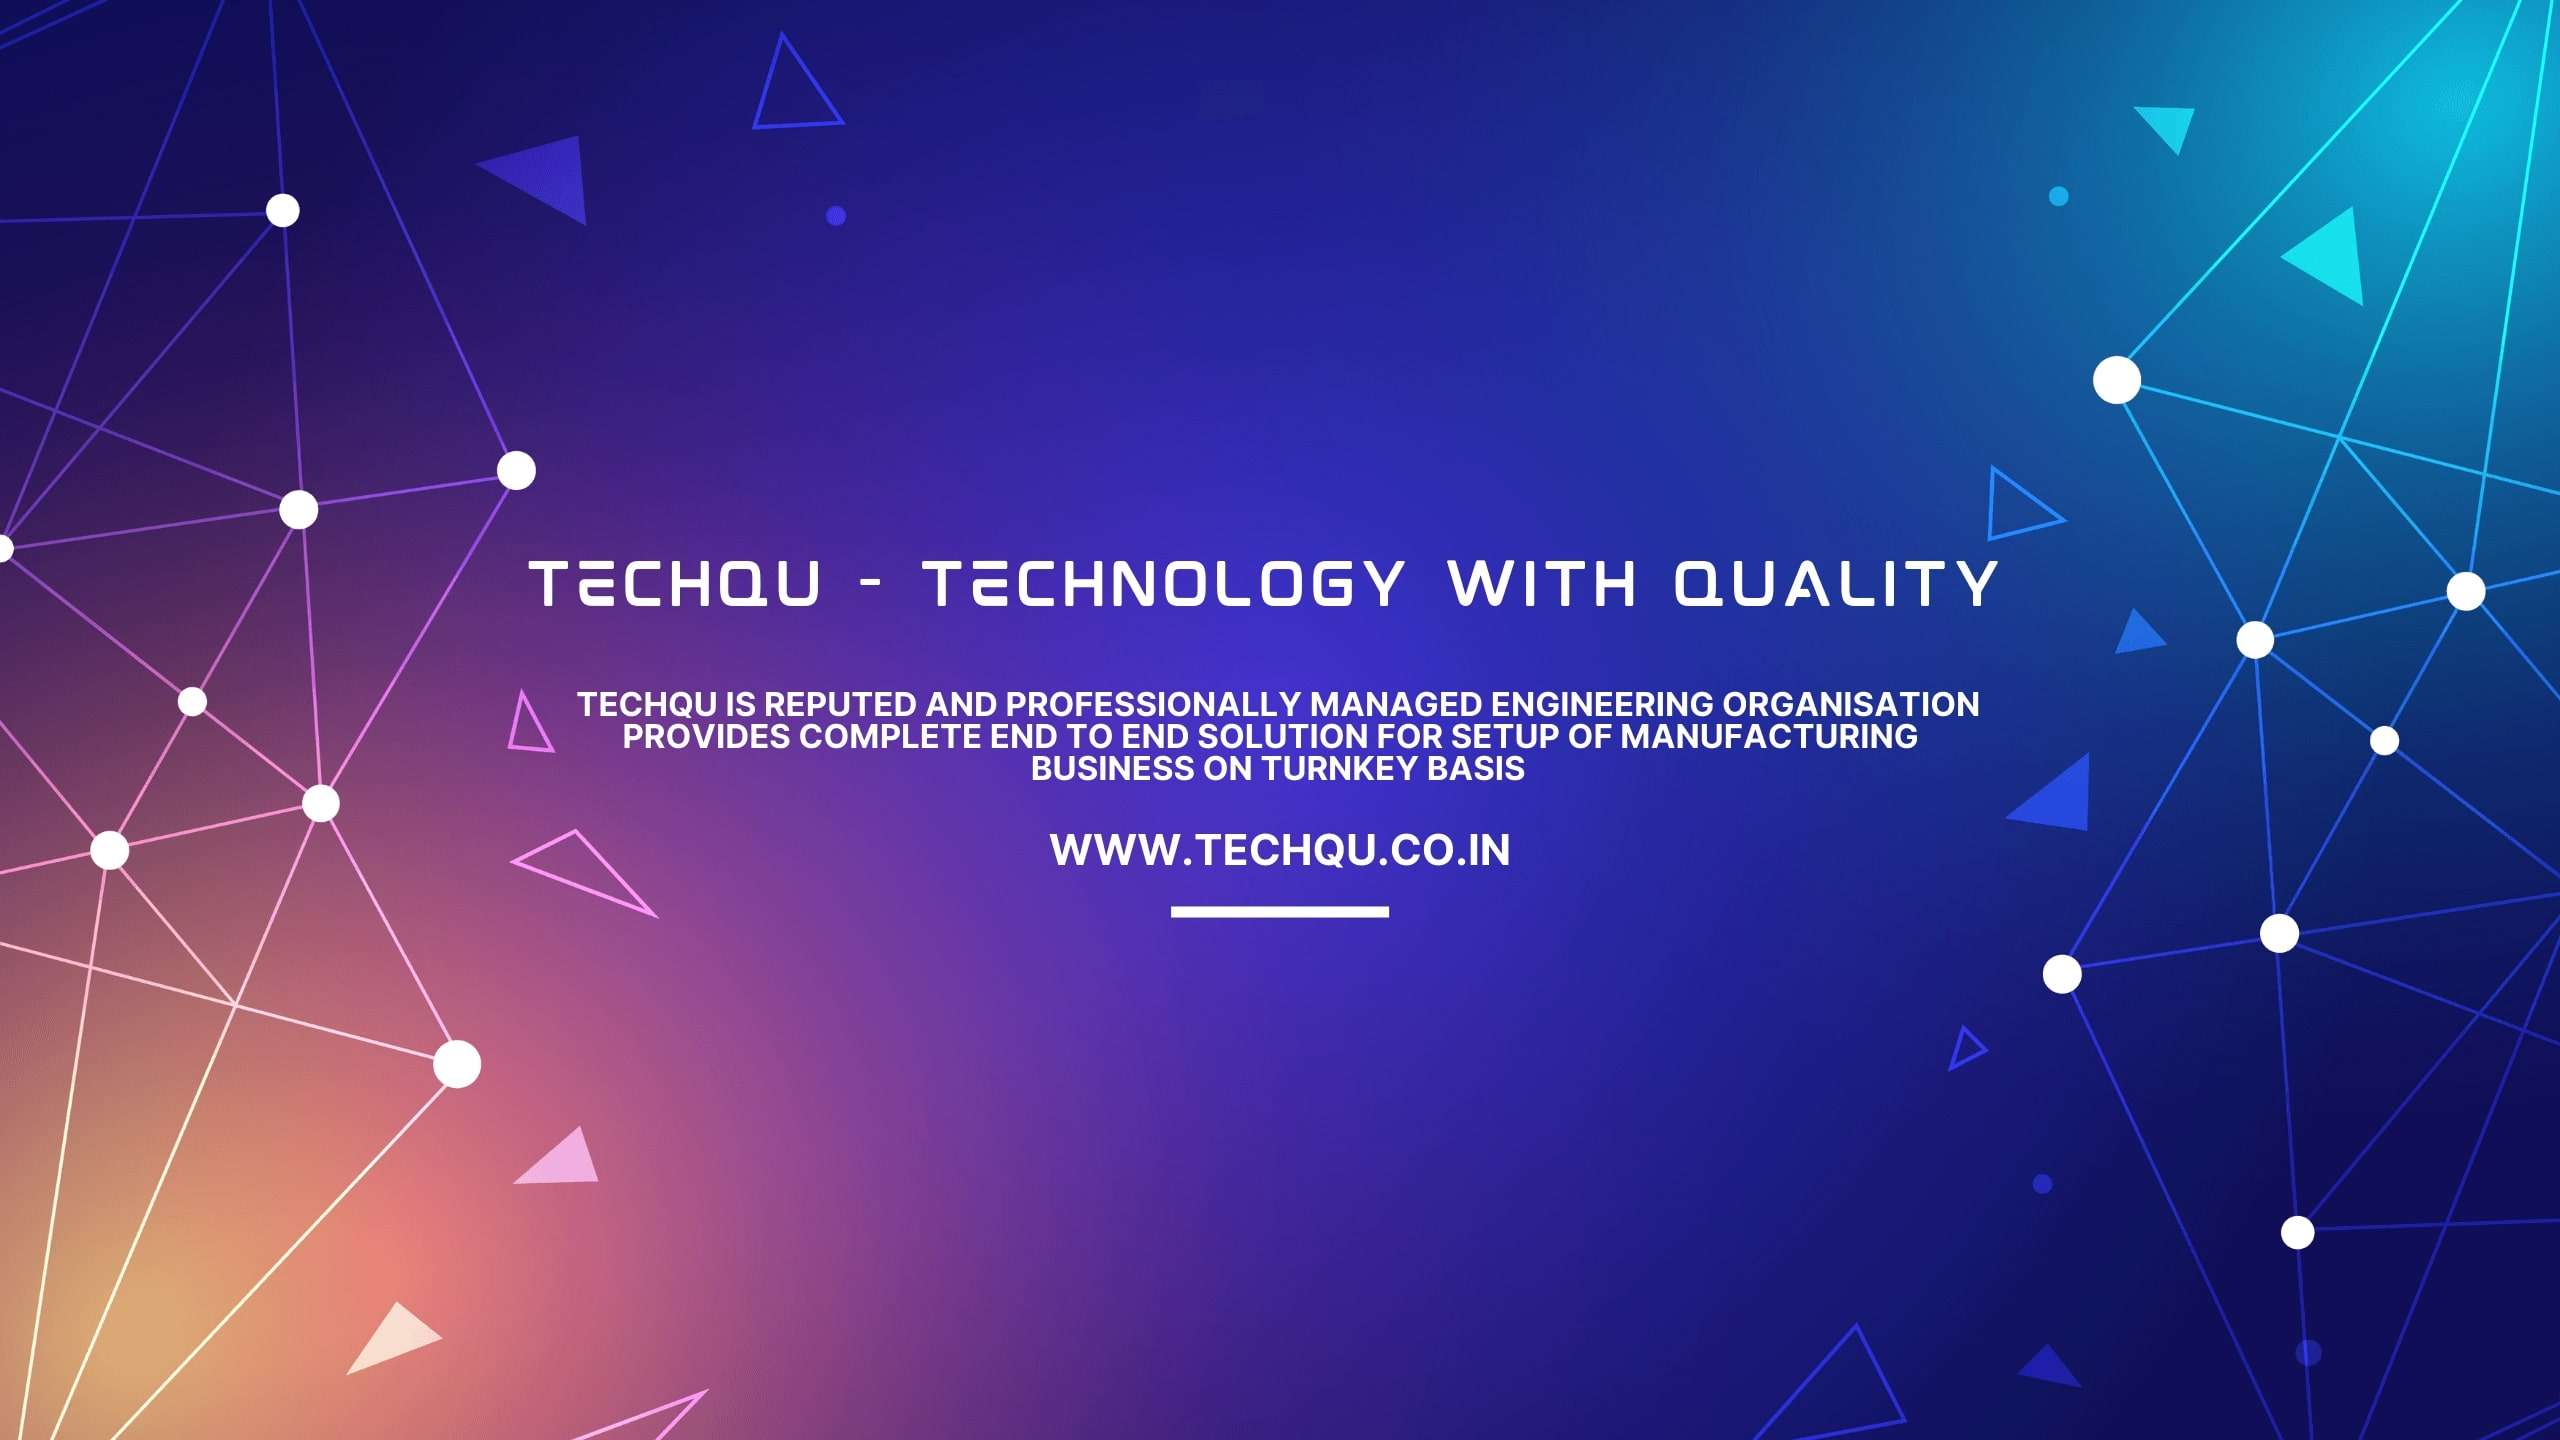 (c) Techqu.co.in